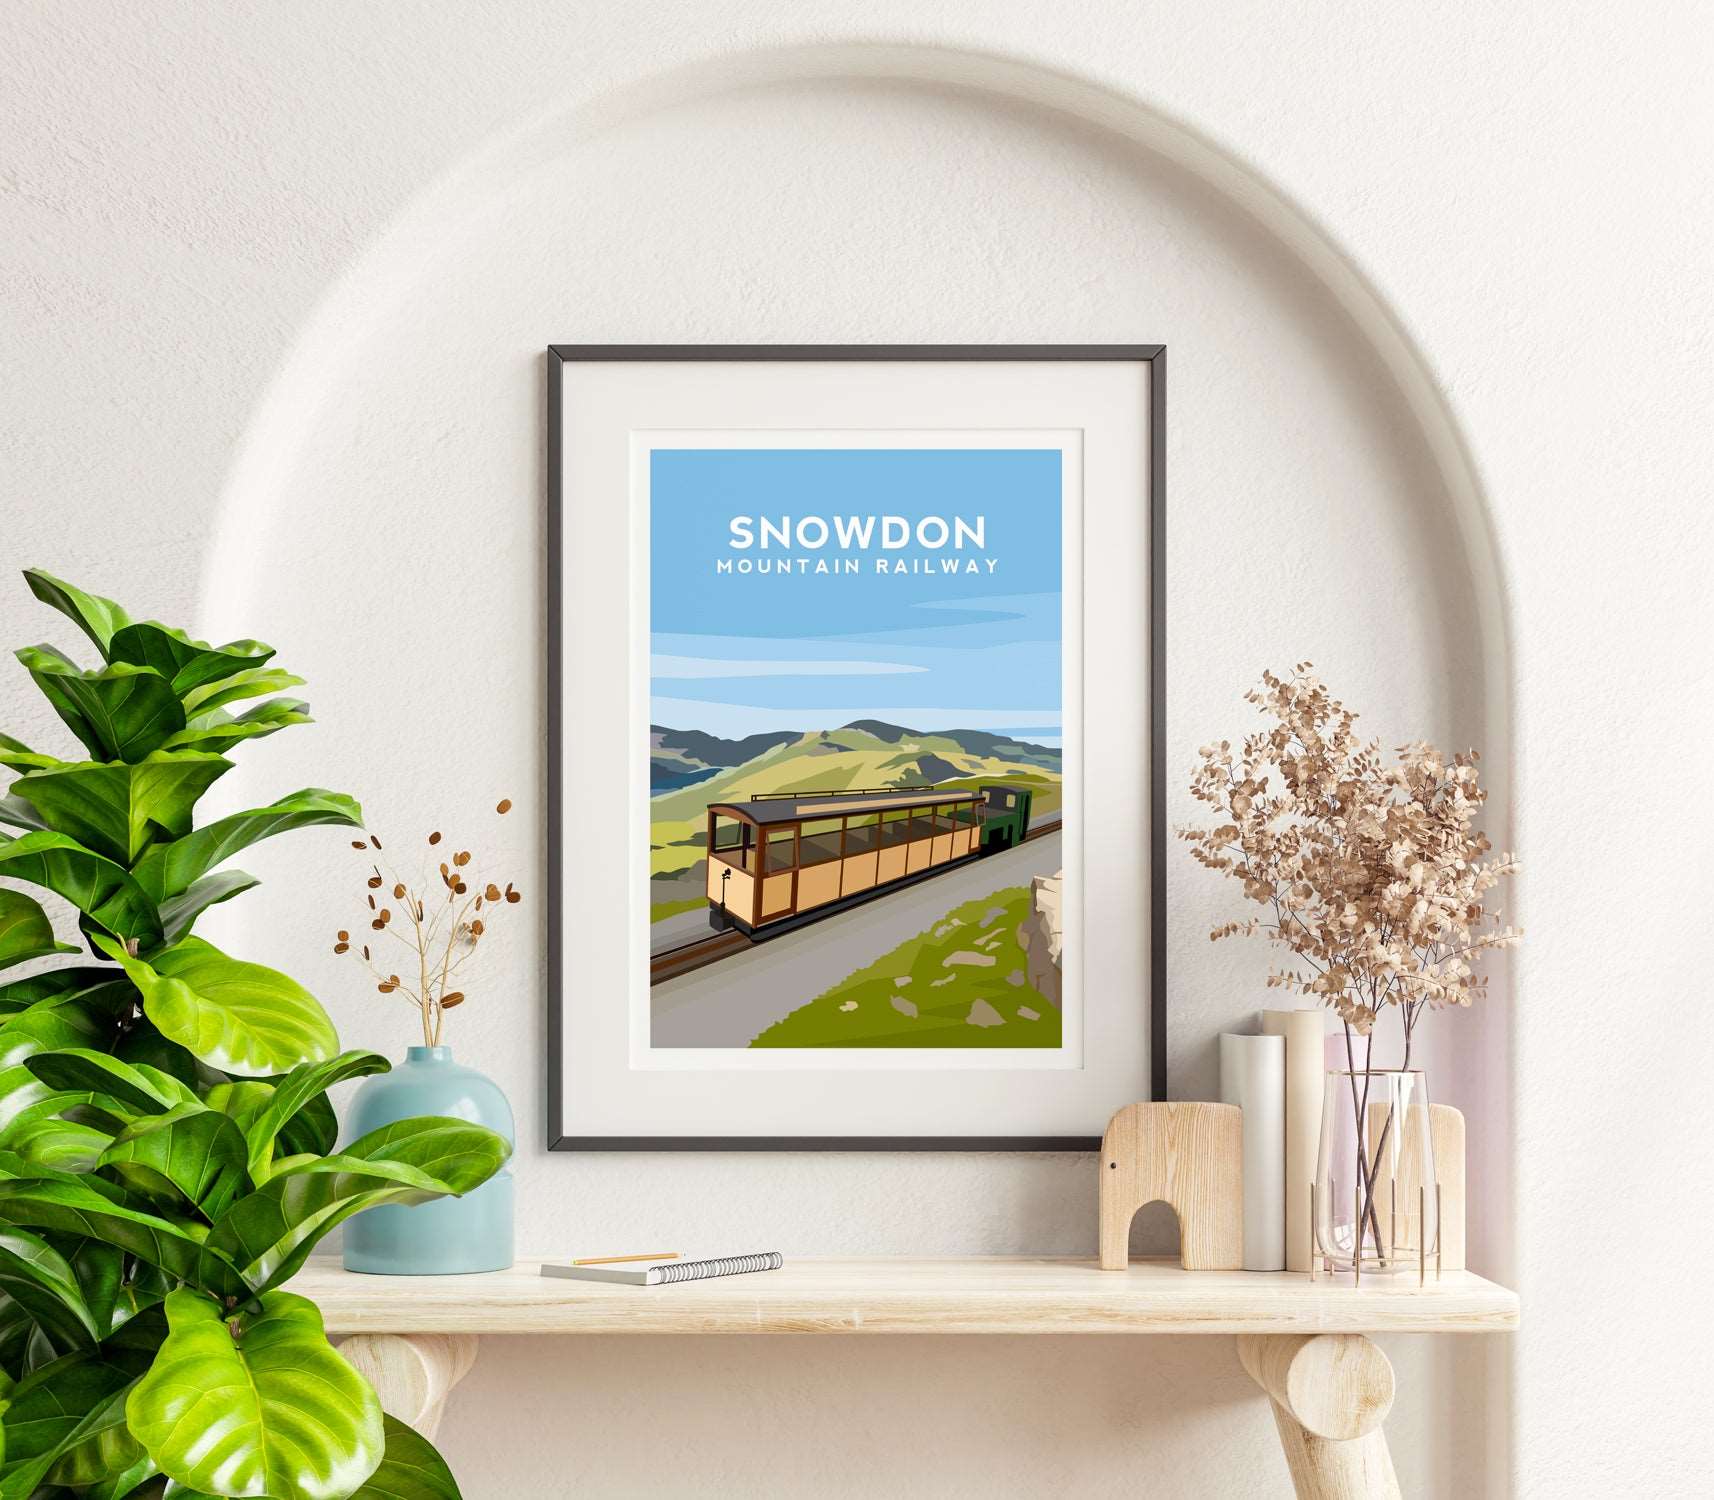 Snowdon Mountain Railway, Wales Travel Print Typelab